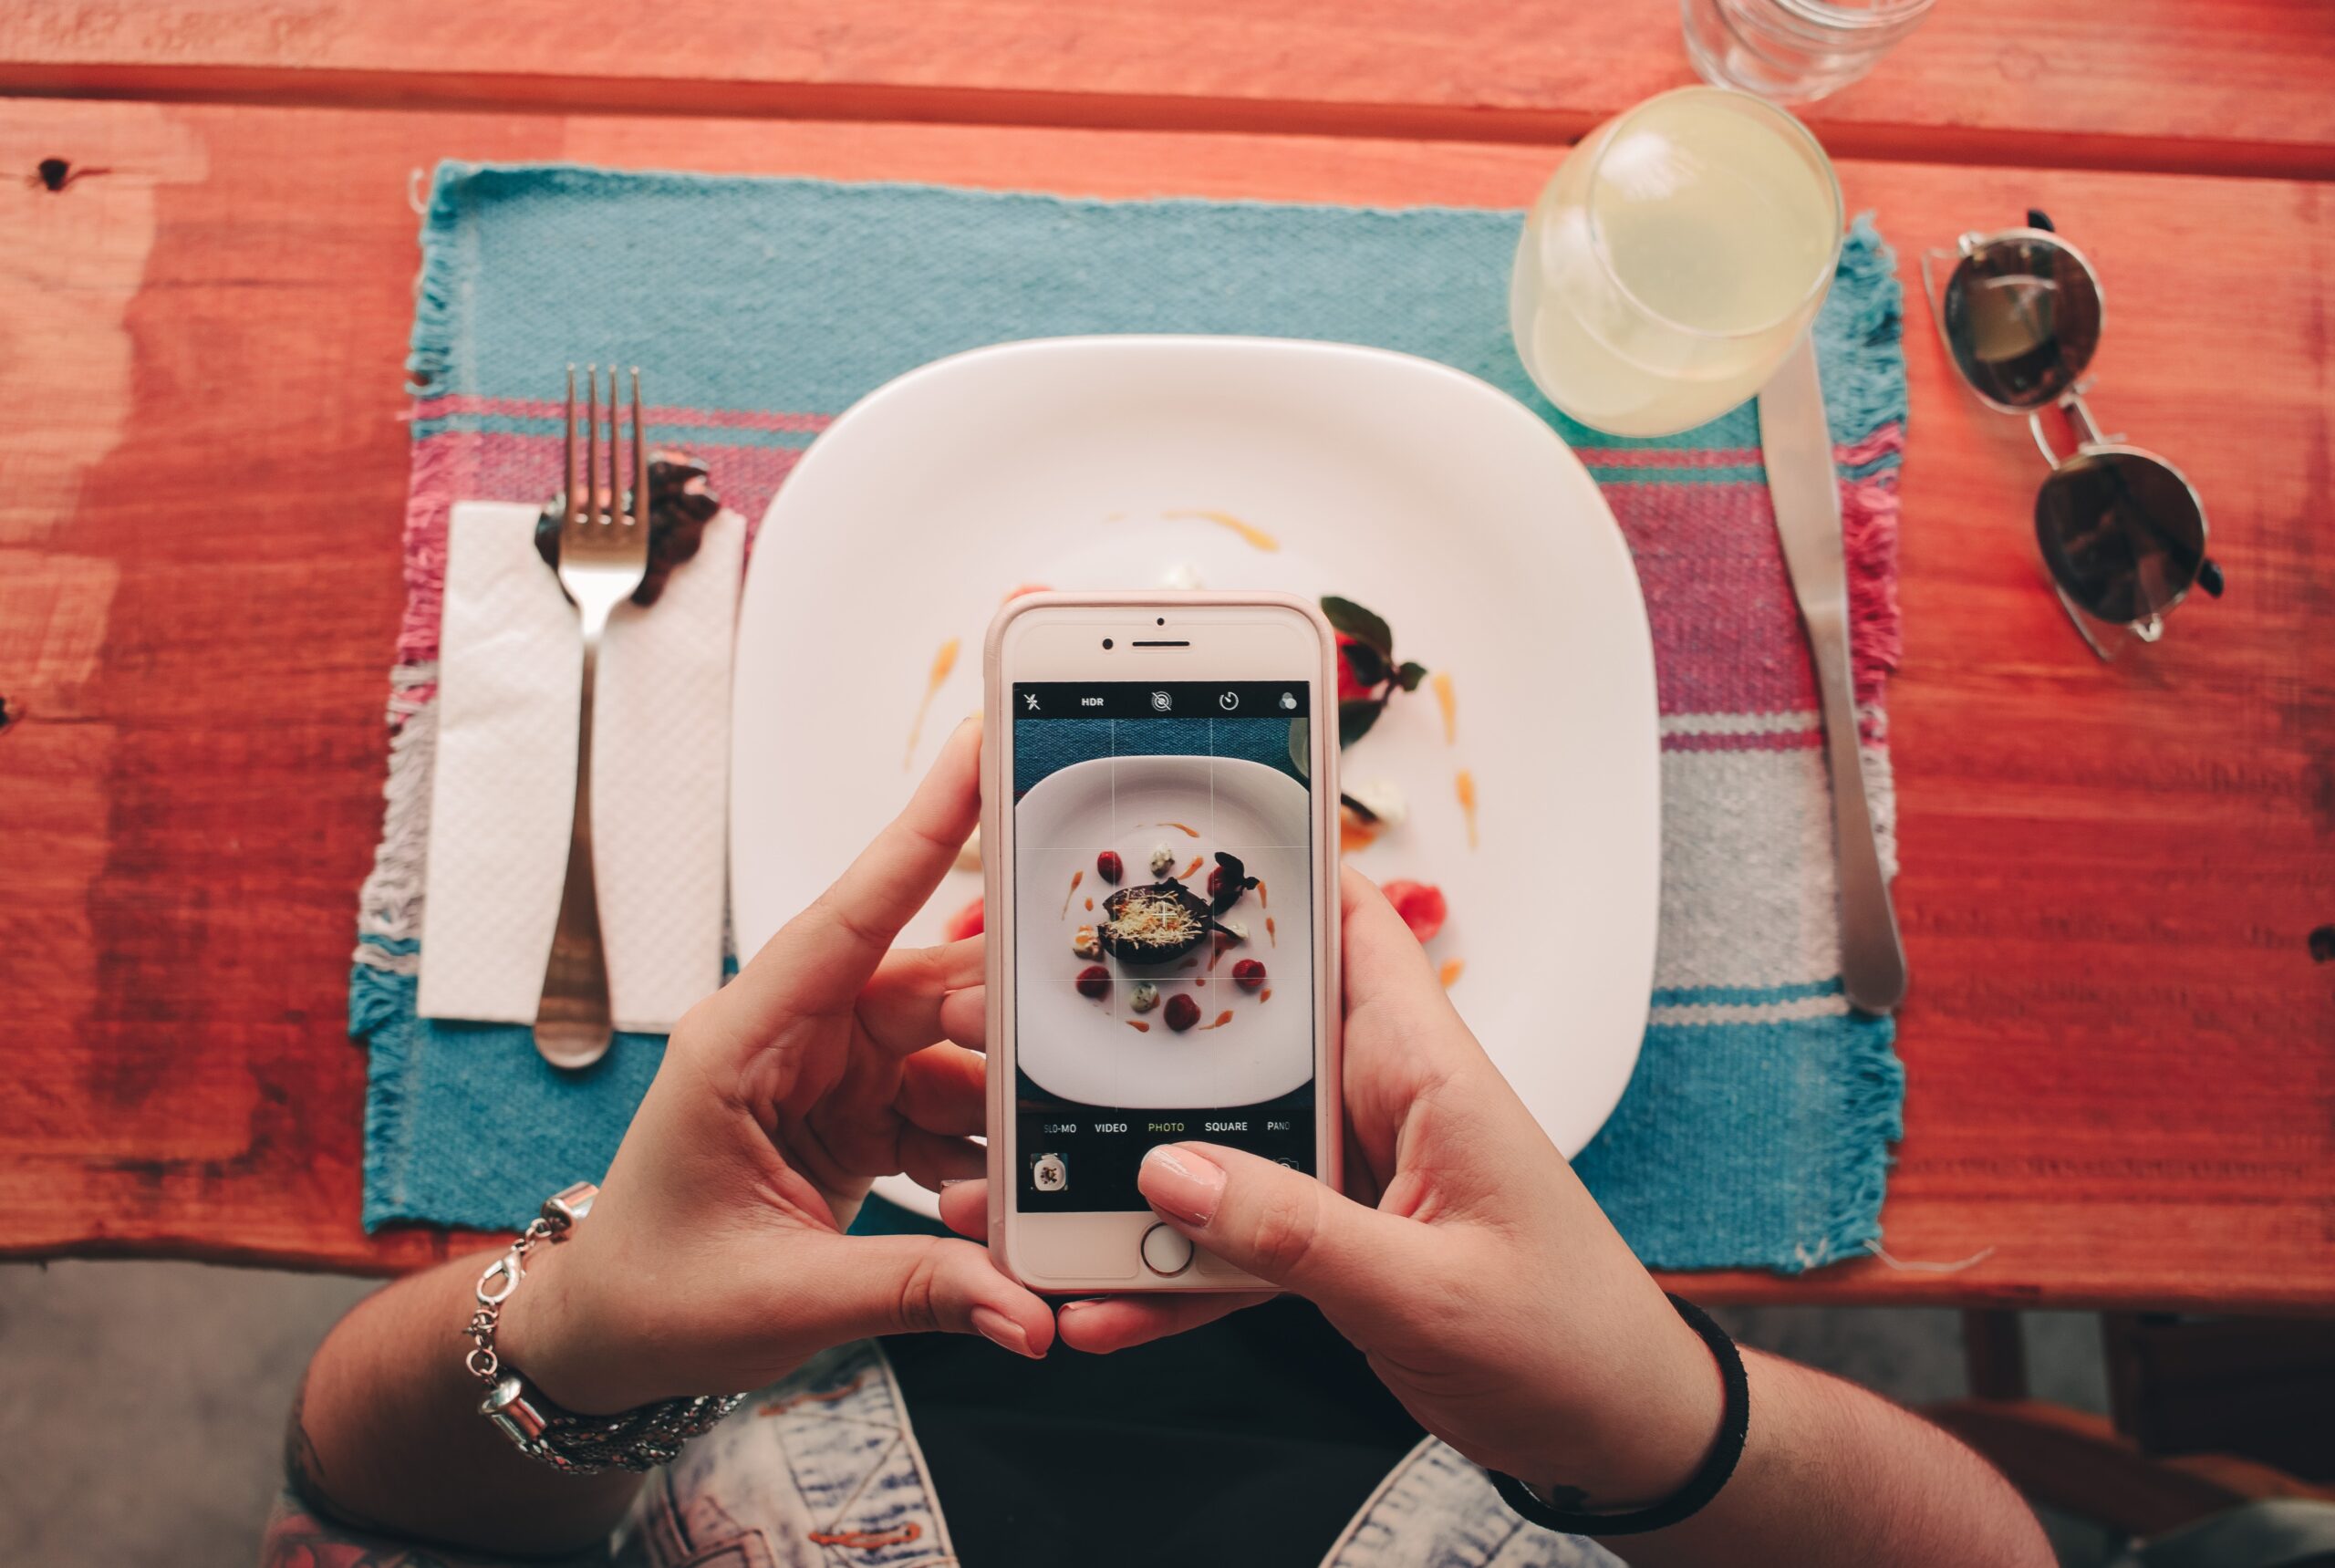 Diner at Restaurant on Smartphone